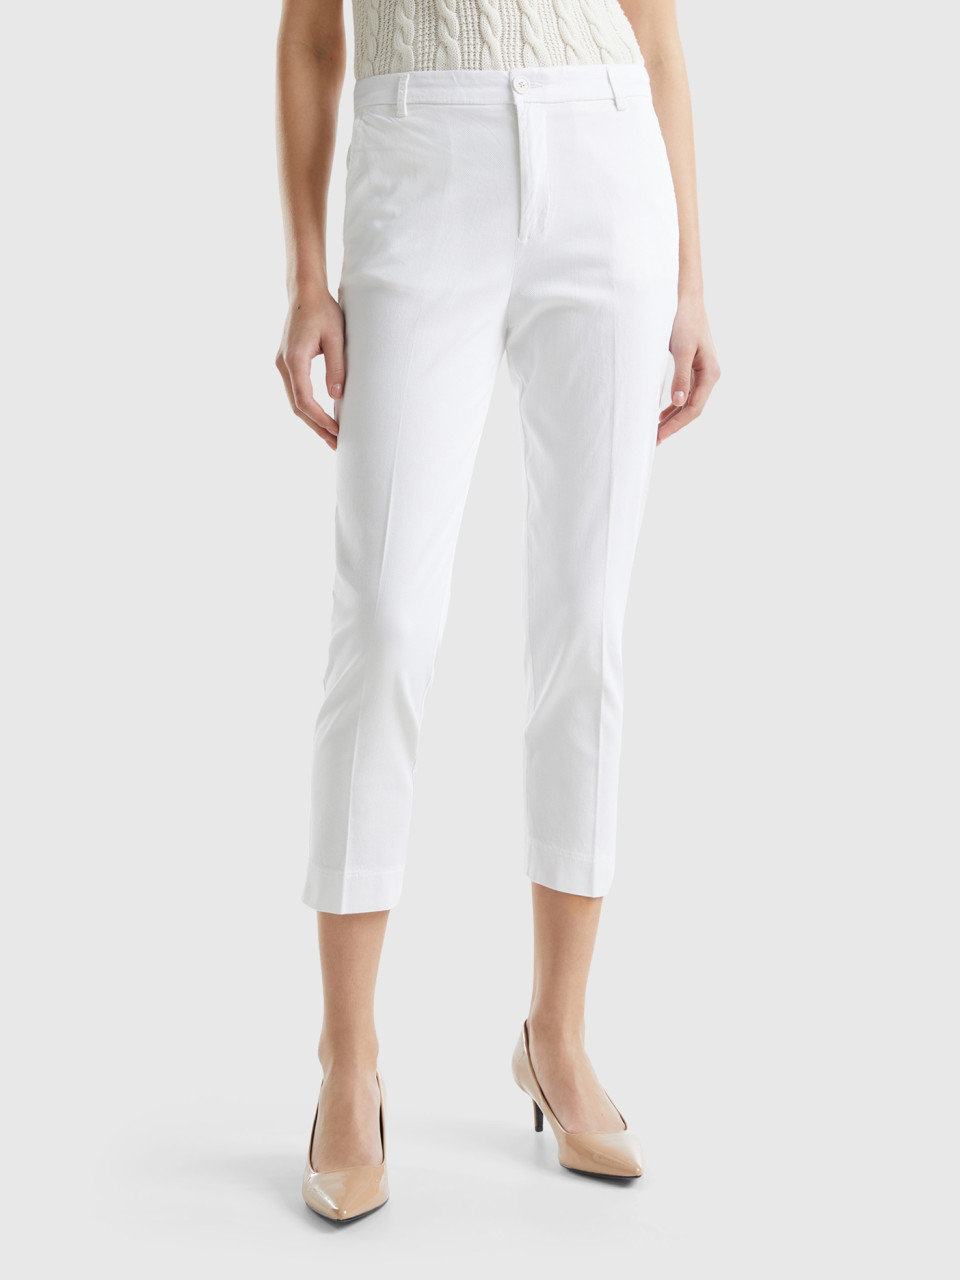 Benetton, Pantalones Chinos Cropped De Algodón Elástico, Blanco, Mujer